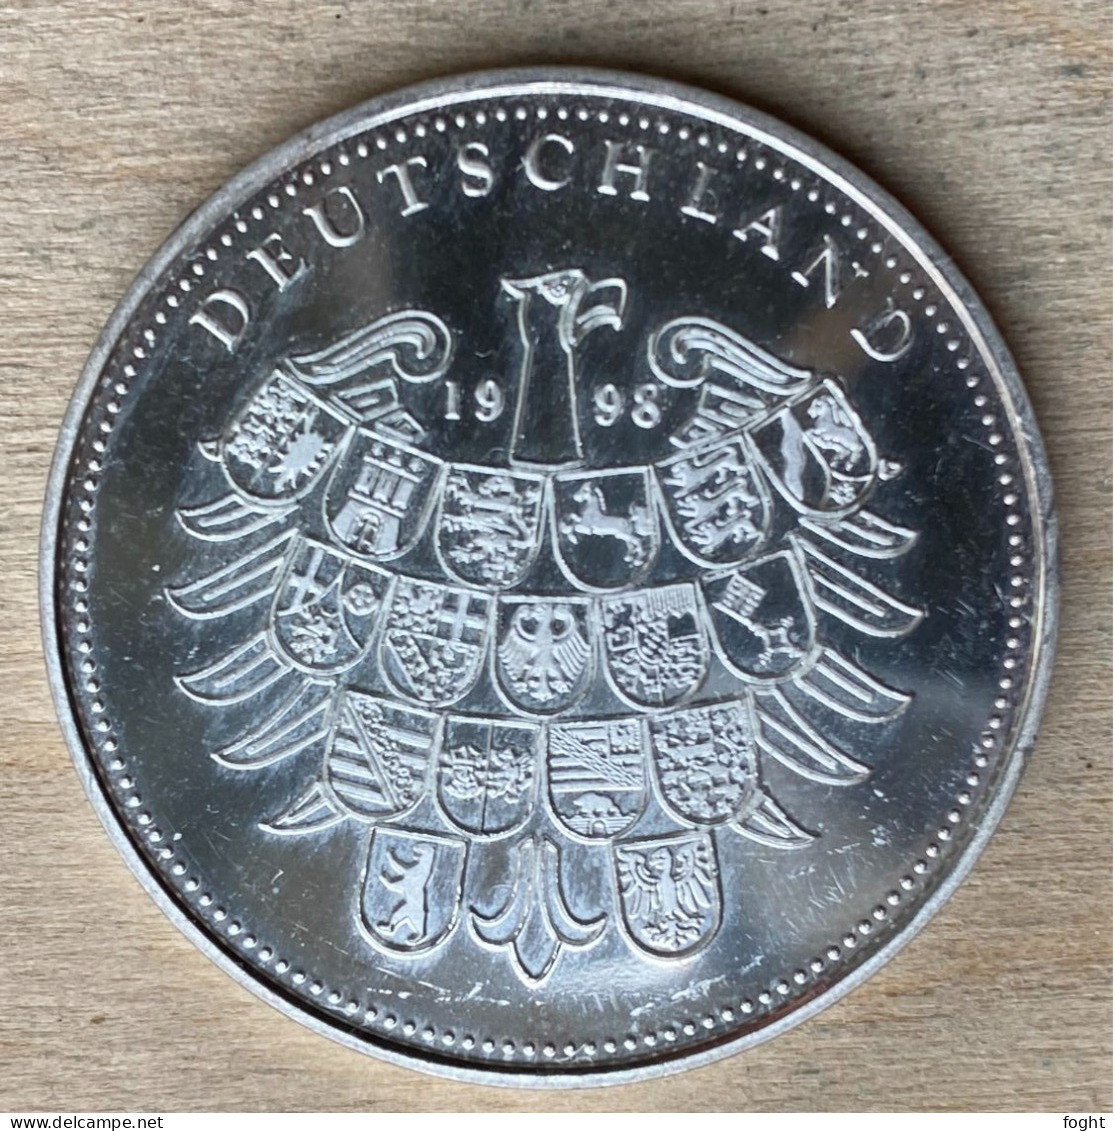 1998 Germany /BRD Medaille  50 Jahre Deutsche Währung .500 Silber,PP,7225 - Firma's